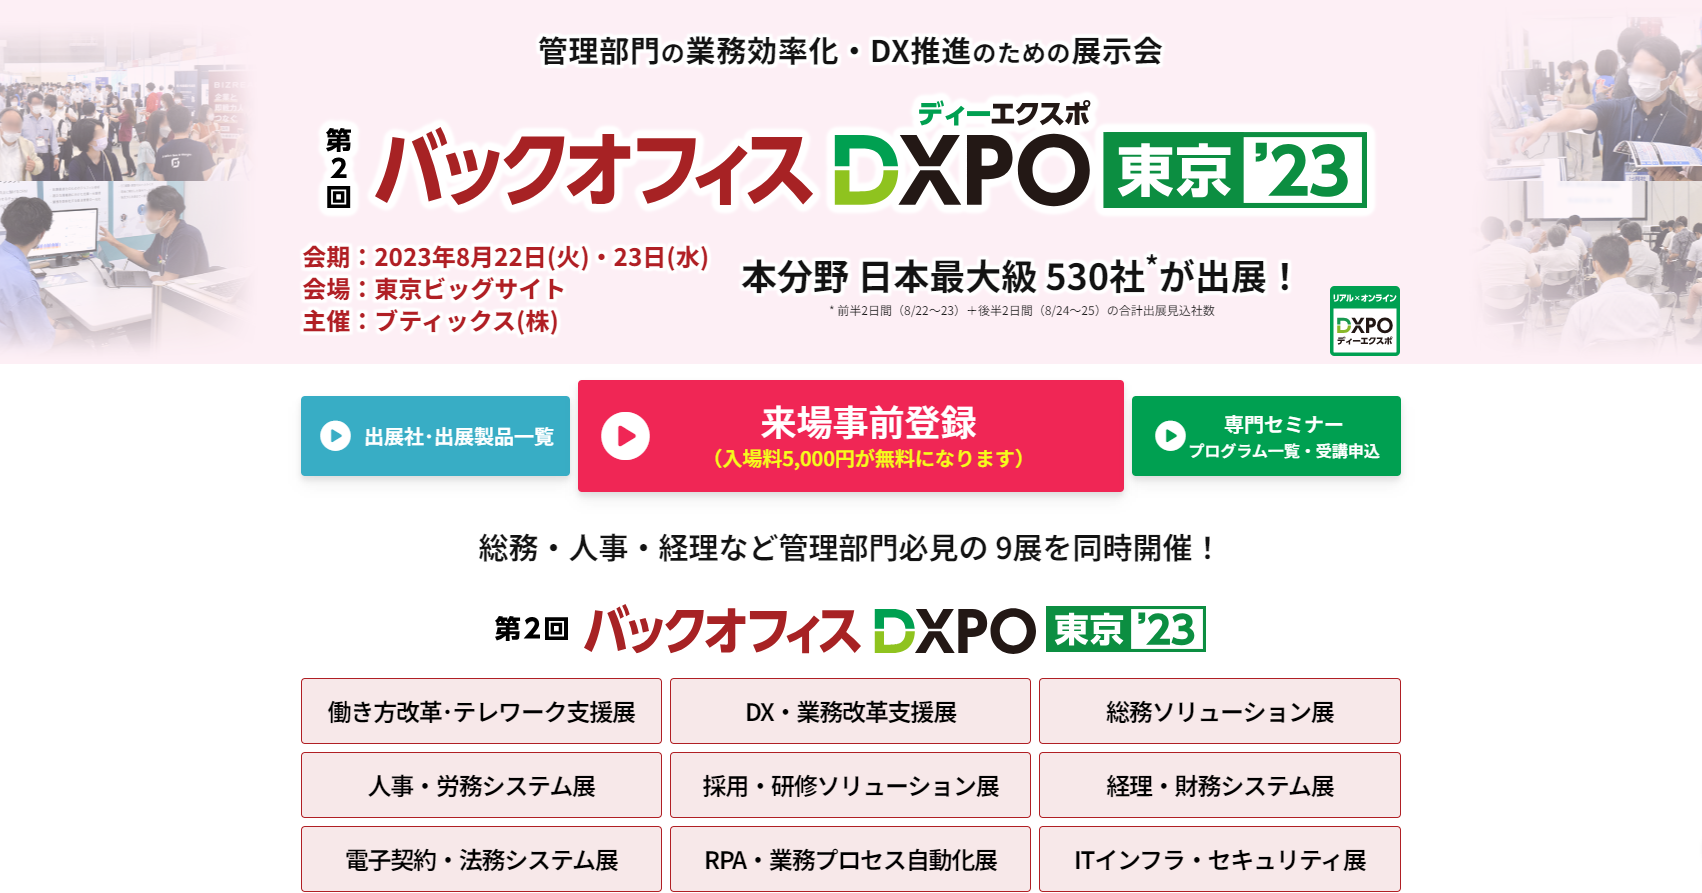 バックオフィス DXPO 東京2023 【東京ビッグサイト】